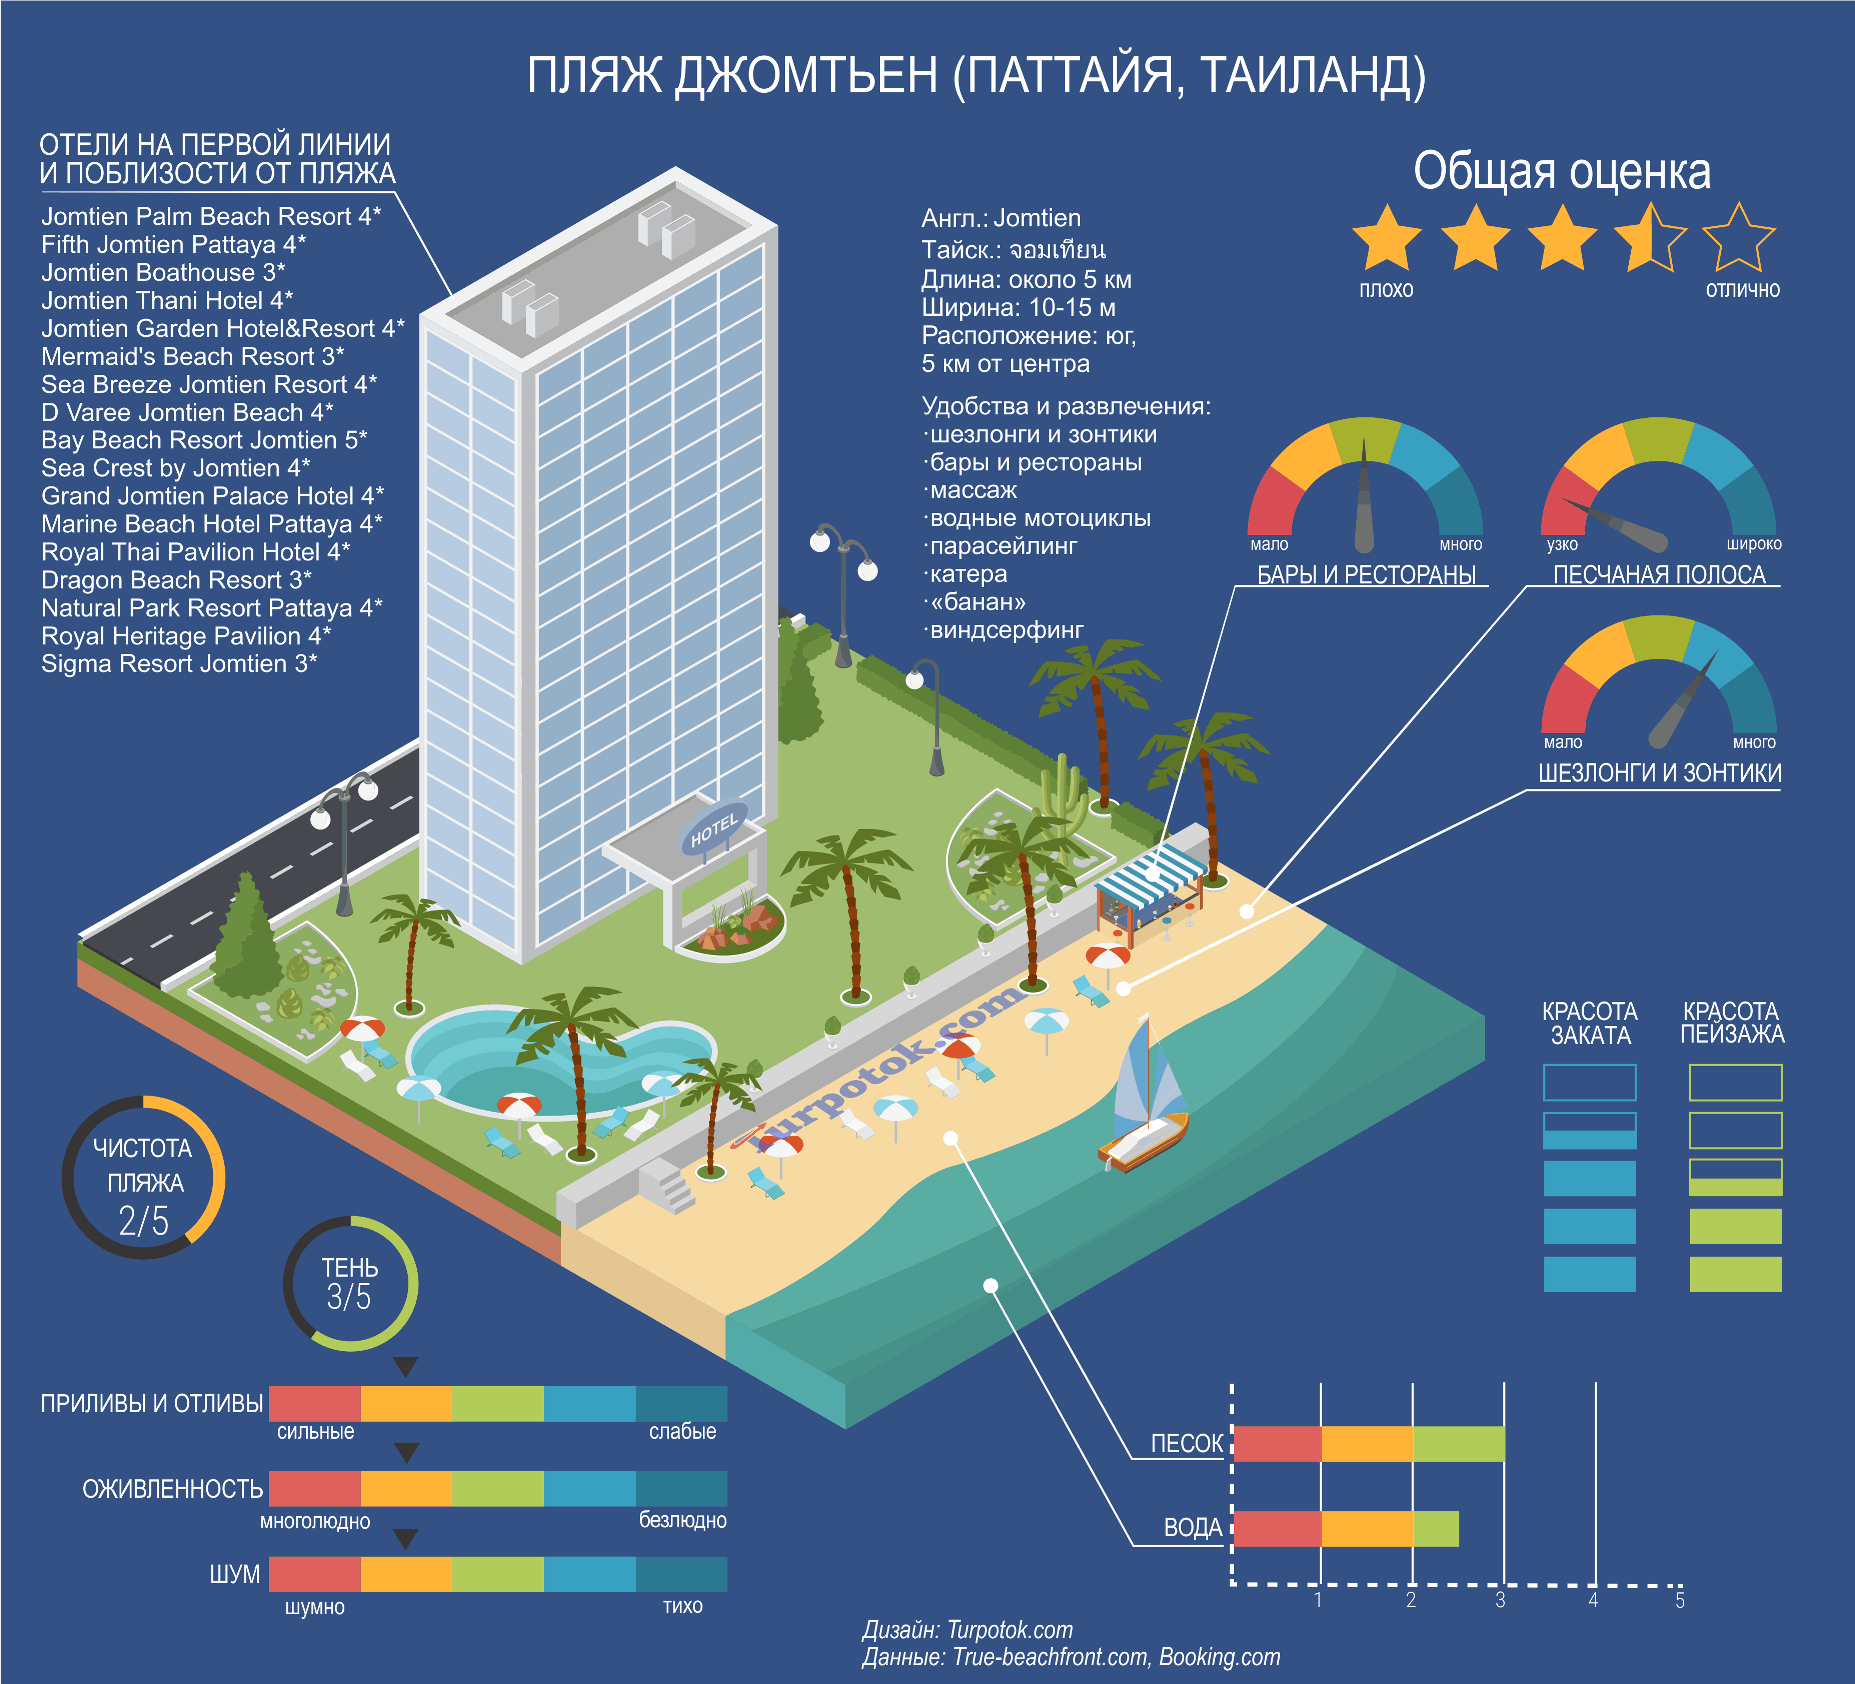 Изображение с инфографикой о пляже Джомтьен в Паттайе